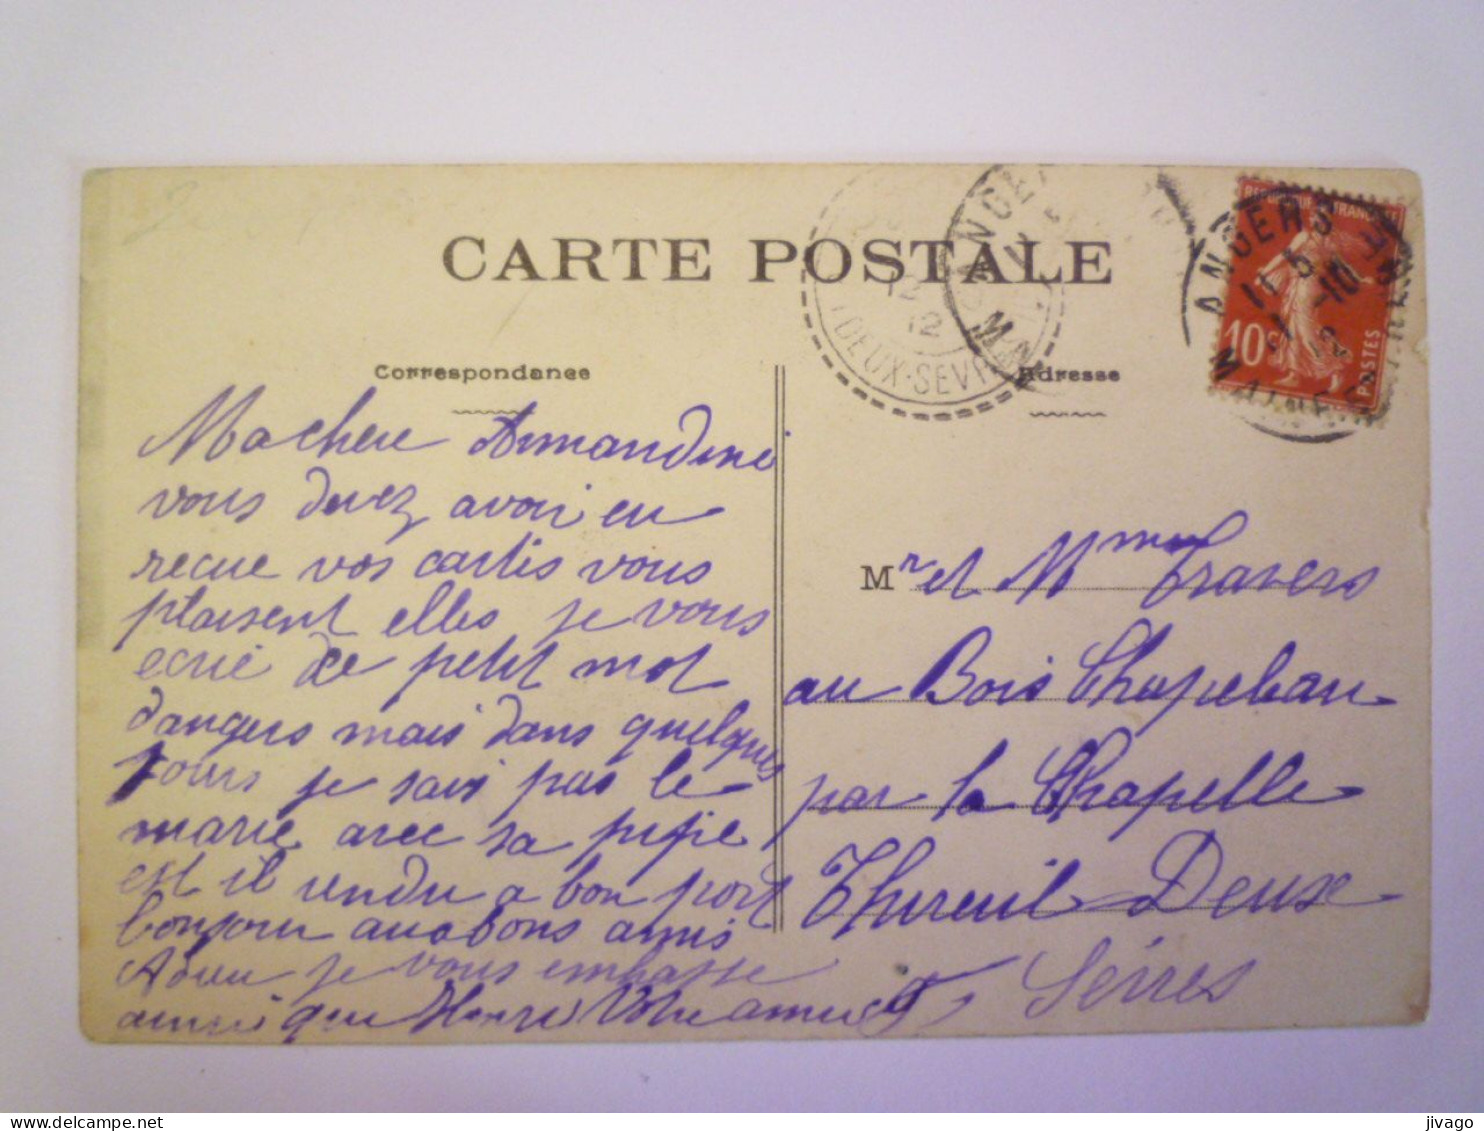 2024 - 1852  LES SABLES D'OLONNE  (Vendée)  :  " C'est Moi La Mère ANNETTE "   1912   XXX - Sables D'Olonne